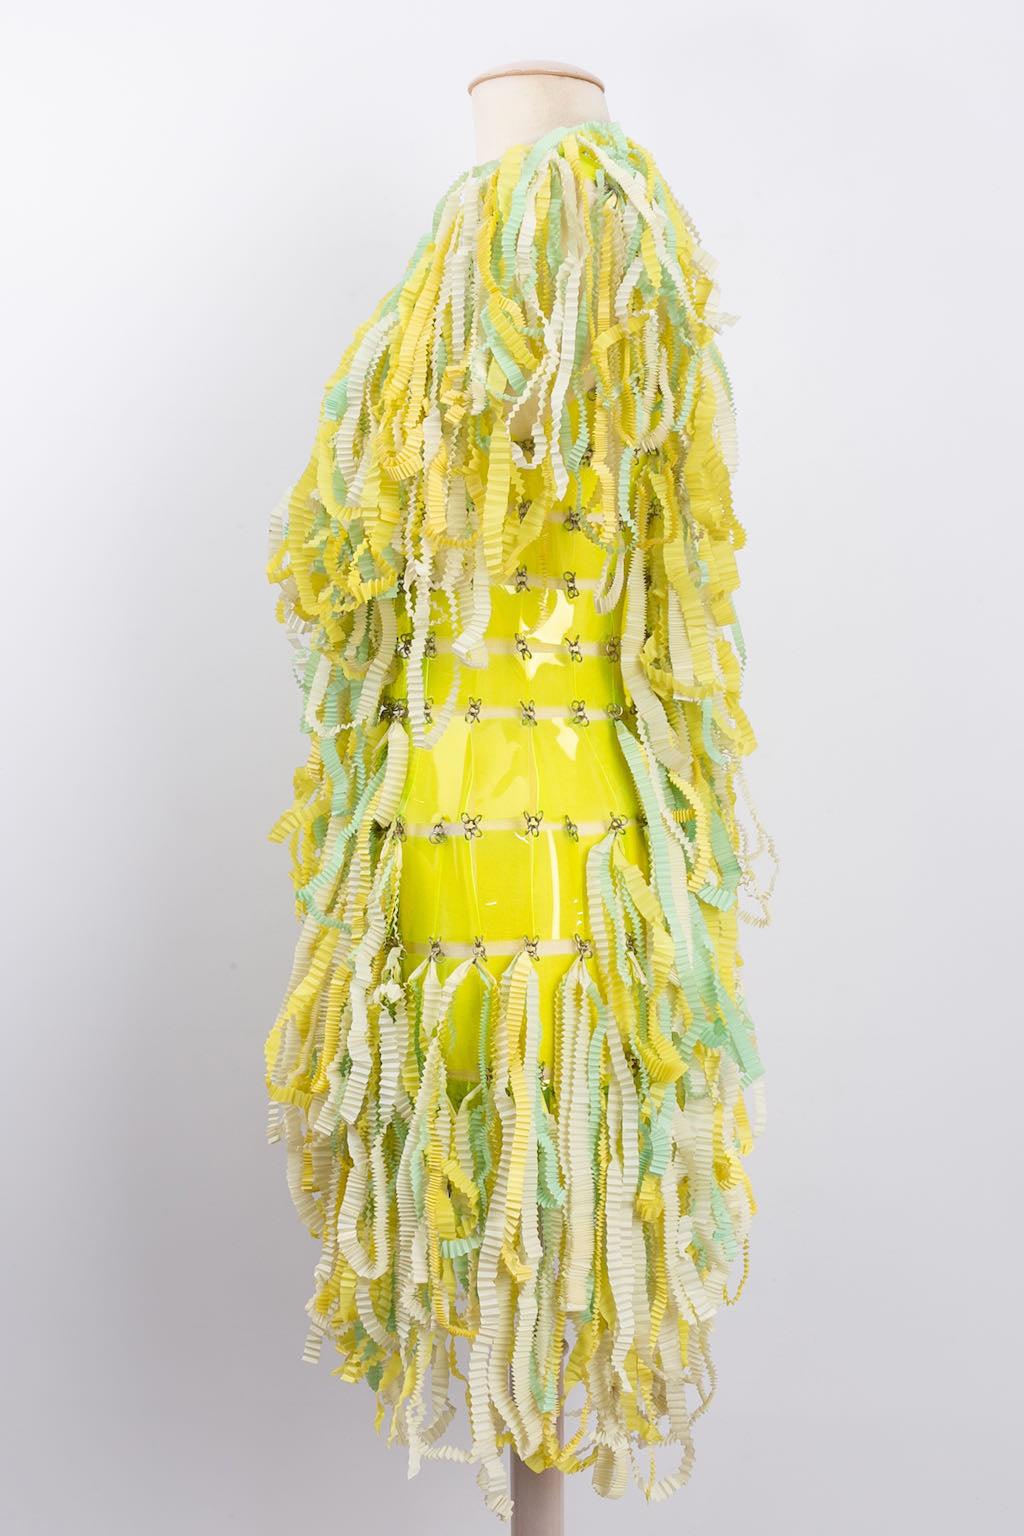 Paco Rabanne - Einmaliges Kleid aus Rhodoïd-Chips und gaufrierten Bändern. CIRCA 1960/70er Jahre. Keine Zusammensetzung oder Größe Tag, es passt eine Größe 36FR.

Zusätzliche Informationen: 

Abmessungen: 
Oberweite: 38 cm (15